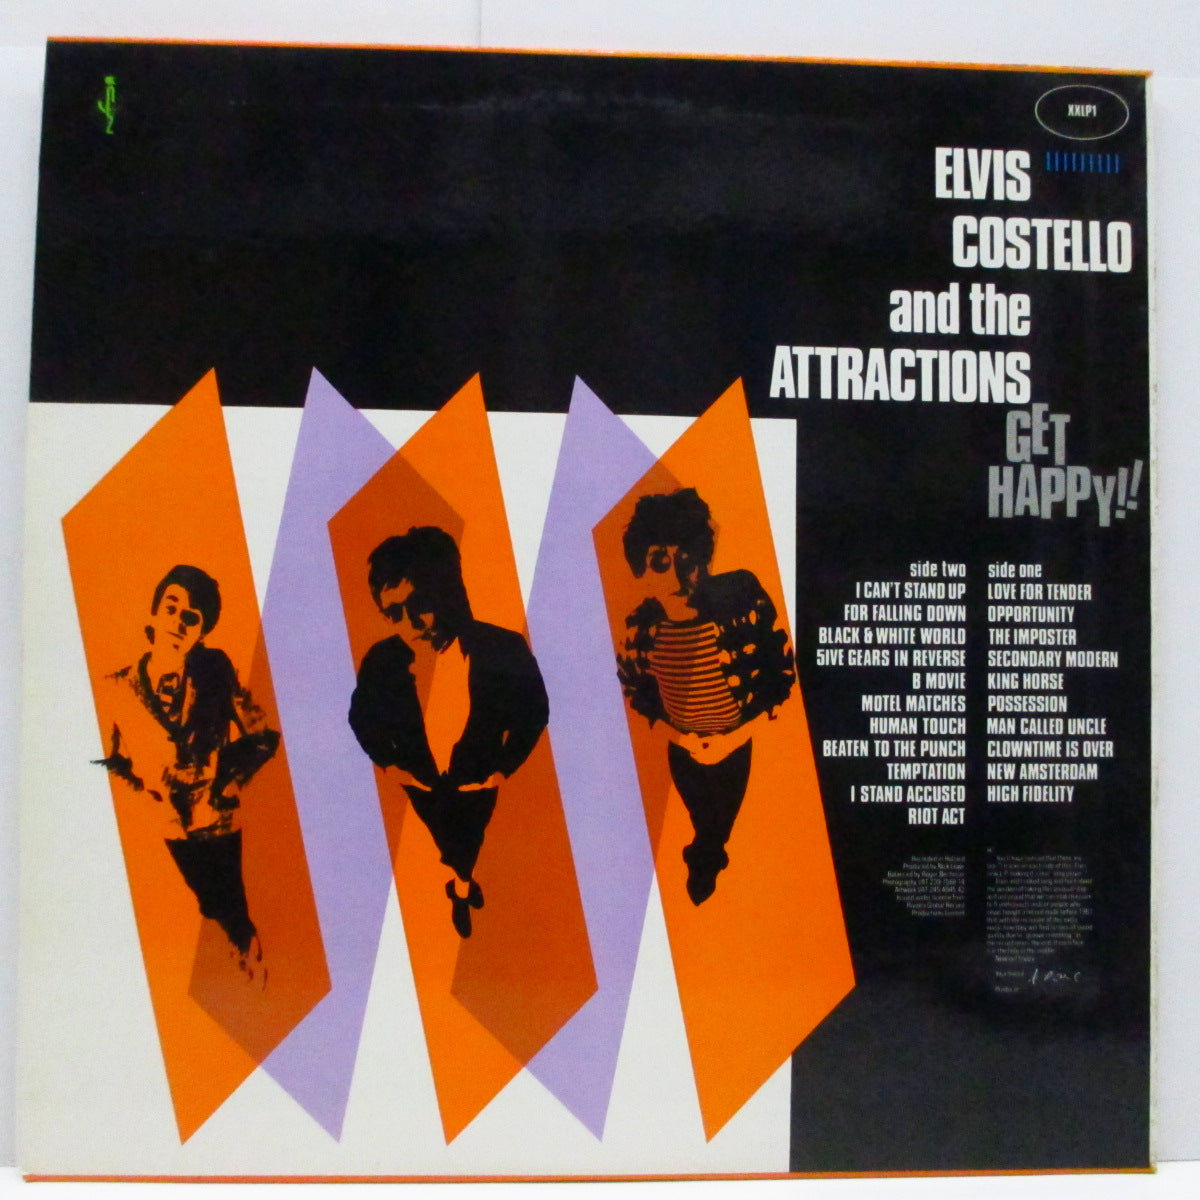 ELVIS COSTELLO And The Attractions (エルヴィス・コステロ u0026 ジ・アトラクションズ) - Get Happy!  (Japan オリジナル LP)